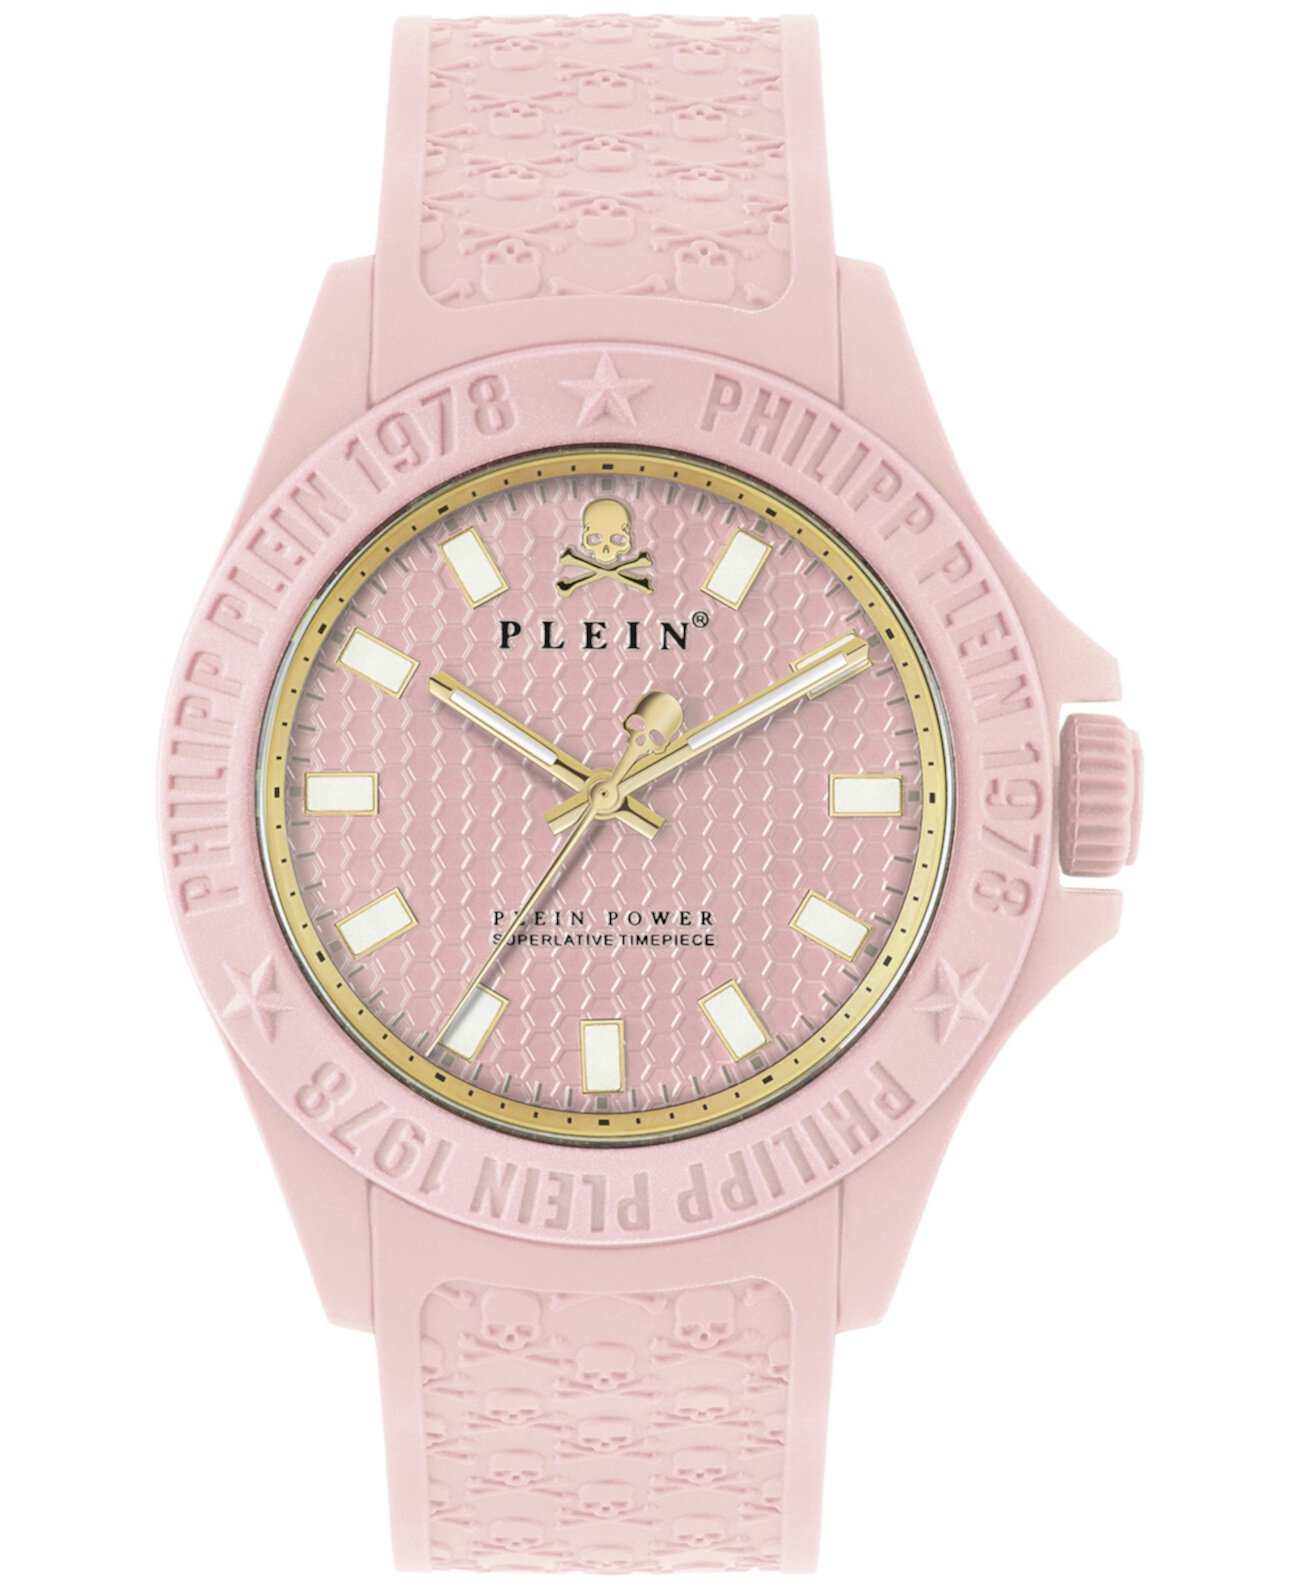 Часы Power Pink с силиконовым ремешком 43 мм Philipp Plein